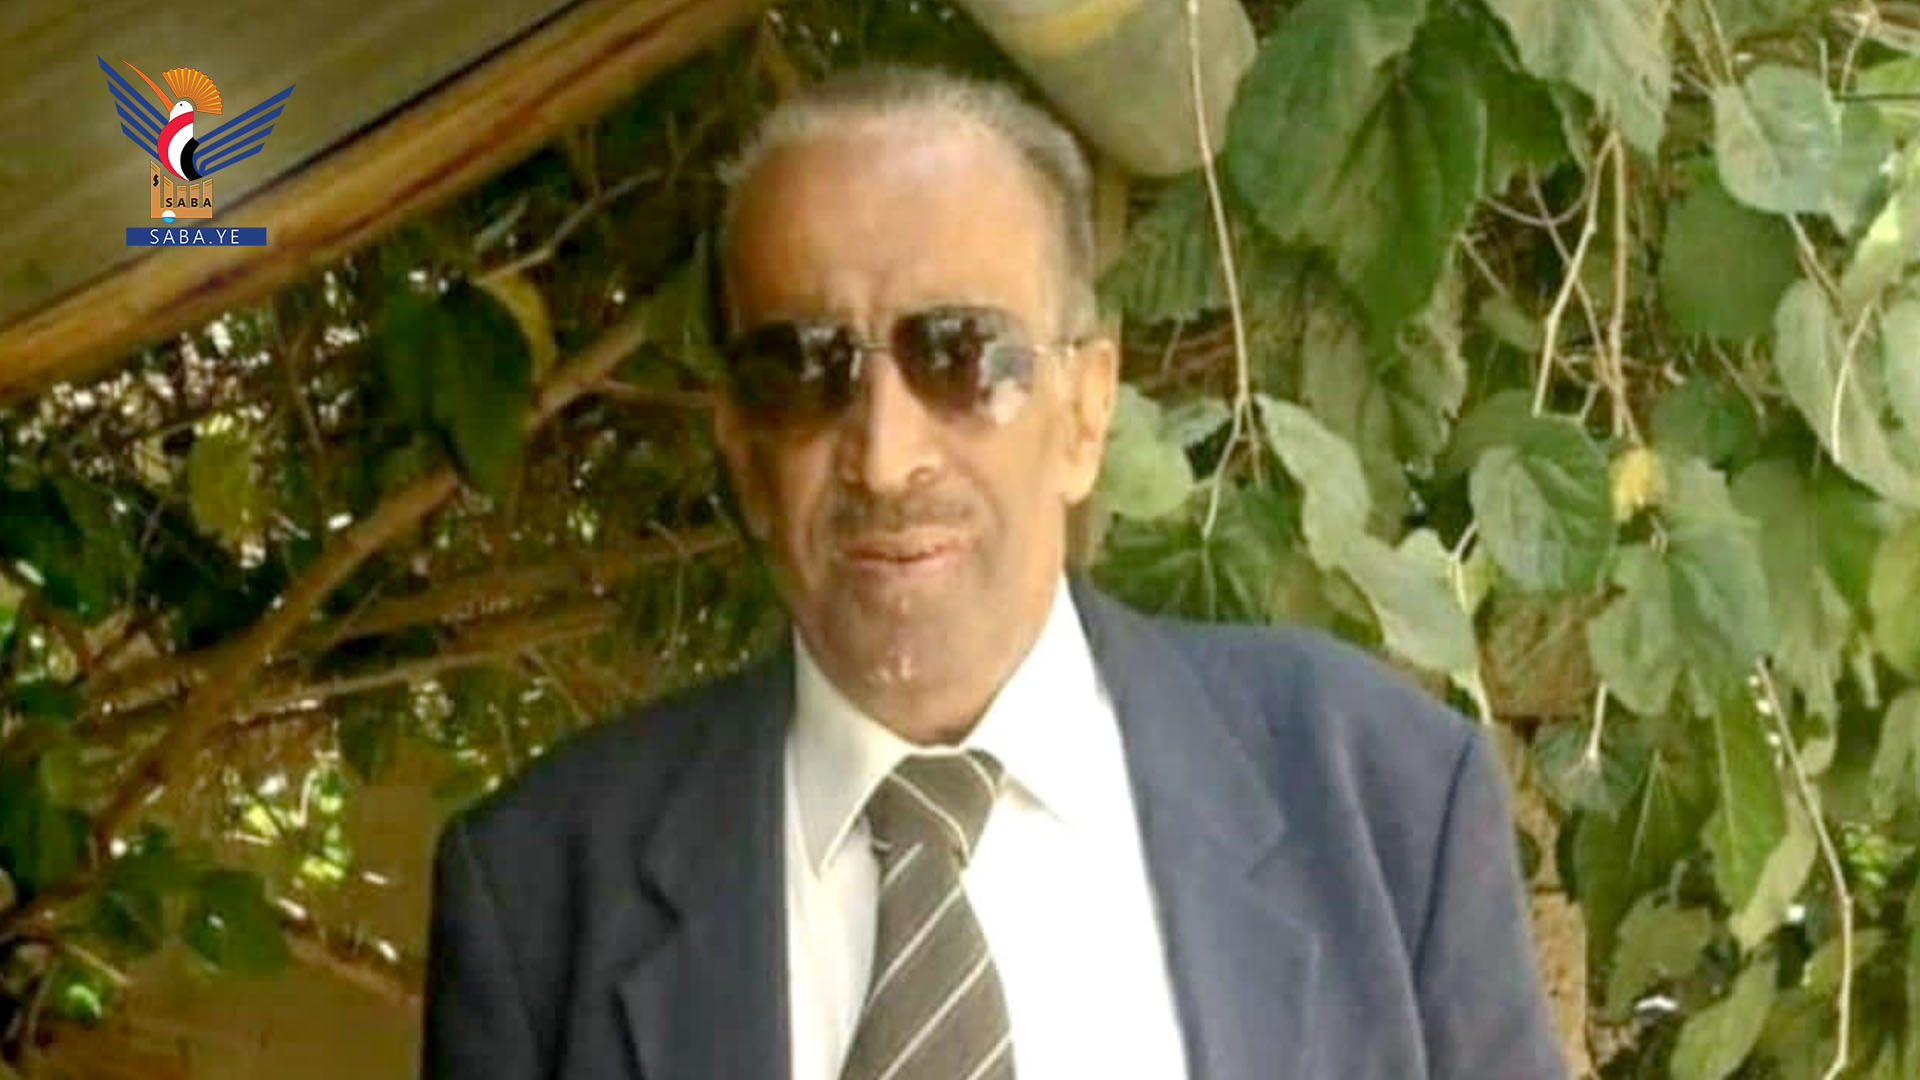 El Ministerio de Información y la Agencia Saba lloran al periodista Abdul Karim Jabari